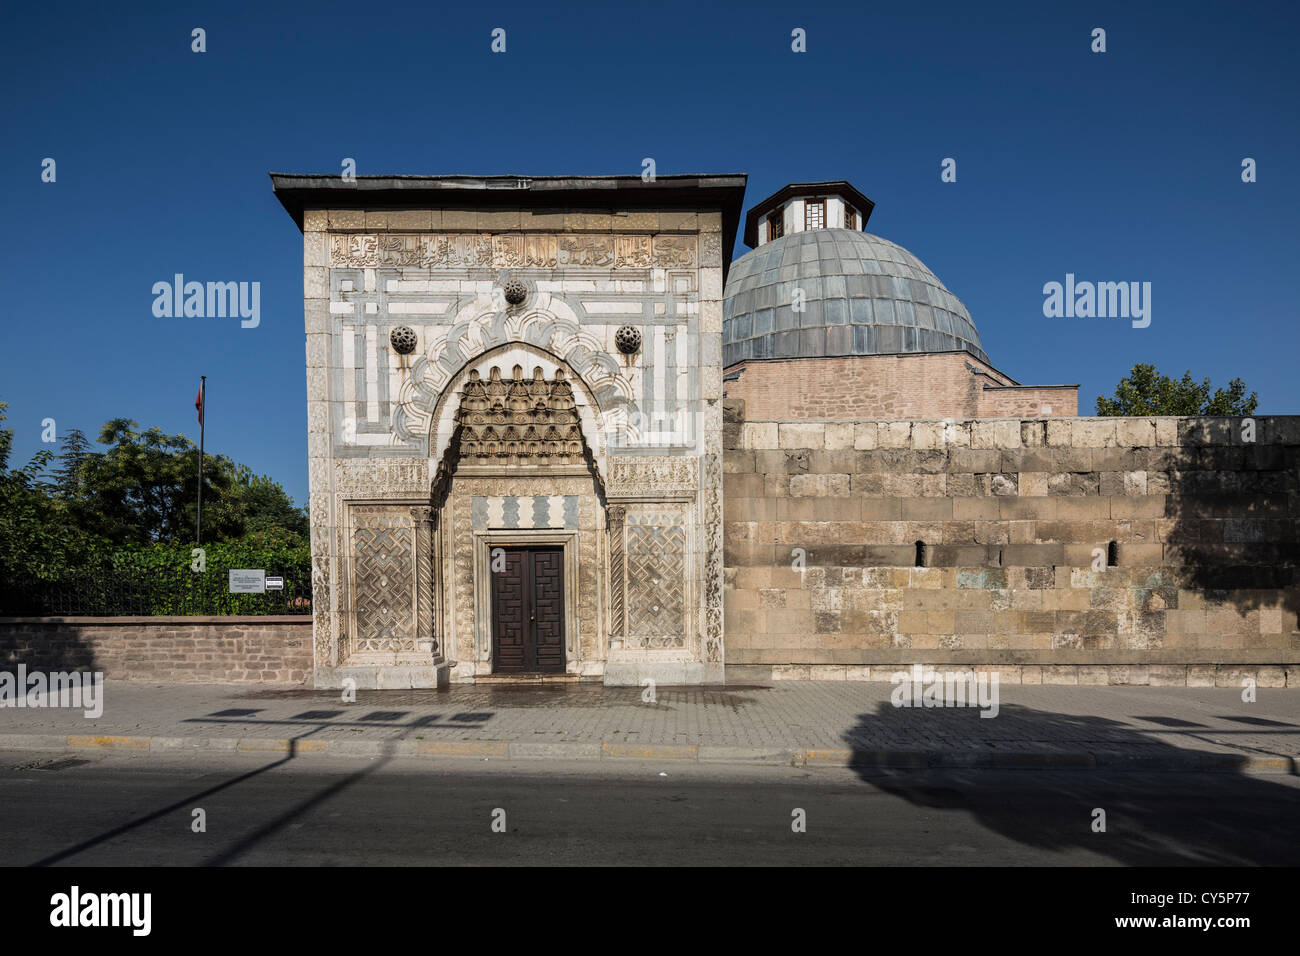 Turkey, Konya, Karatay Madrasa, entrance portal and facade Stock Photo